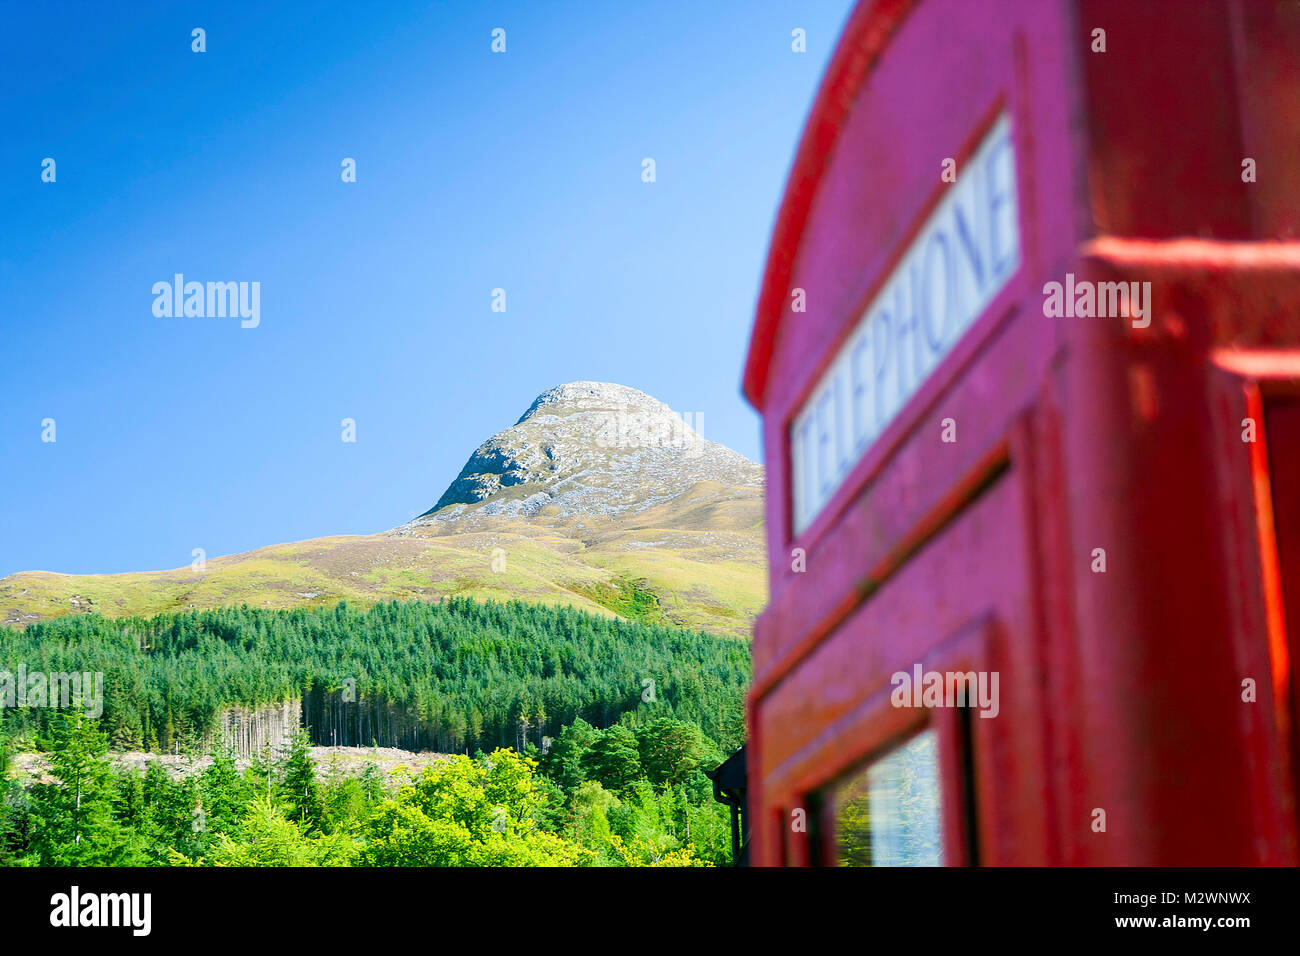 Il Pap di Glencoe mountain nelle Highlands scozzesi denominato Sgurr na Cìche in gaelico scozzese con una giustapposizione di attenzione telefonica Foto Stock